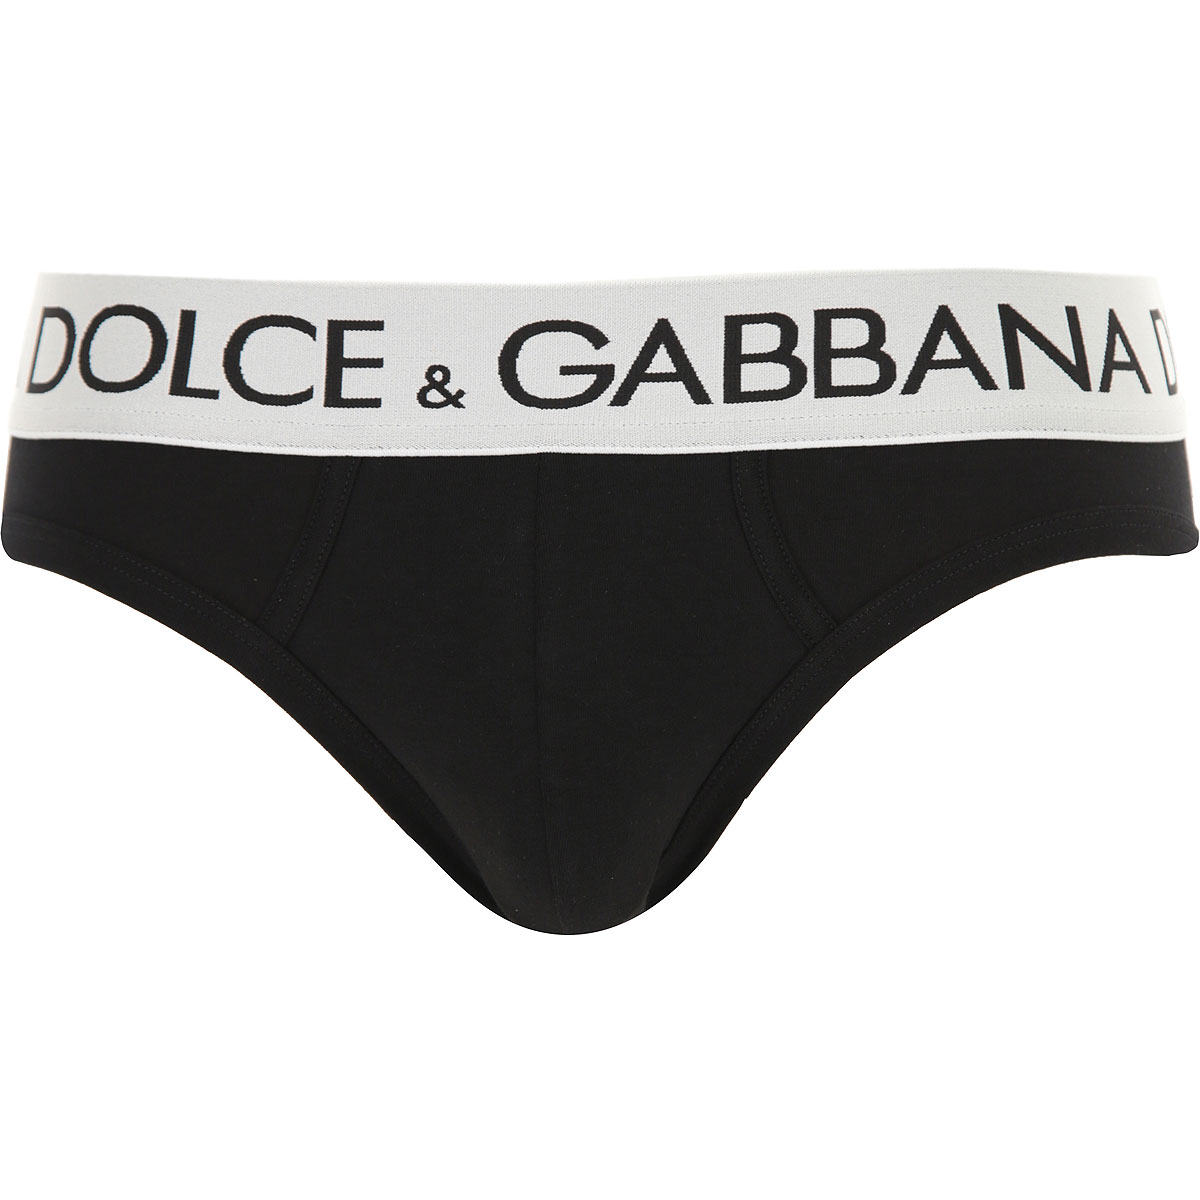 Mens Underwear Dolce & Gabbana, Style code: m3d03j-0ualg-n0000